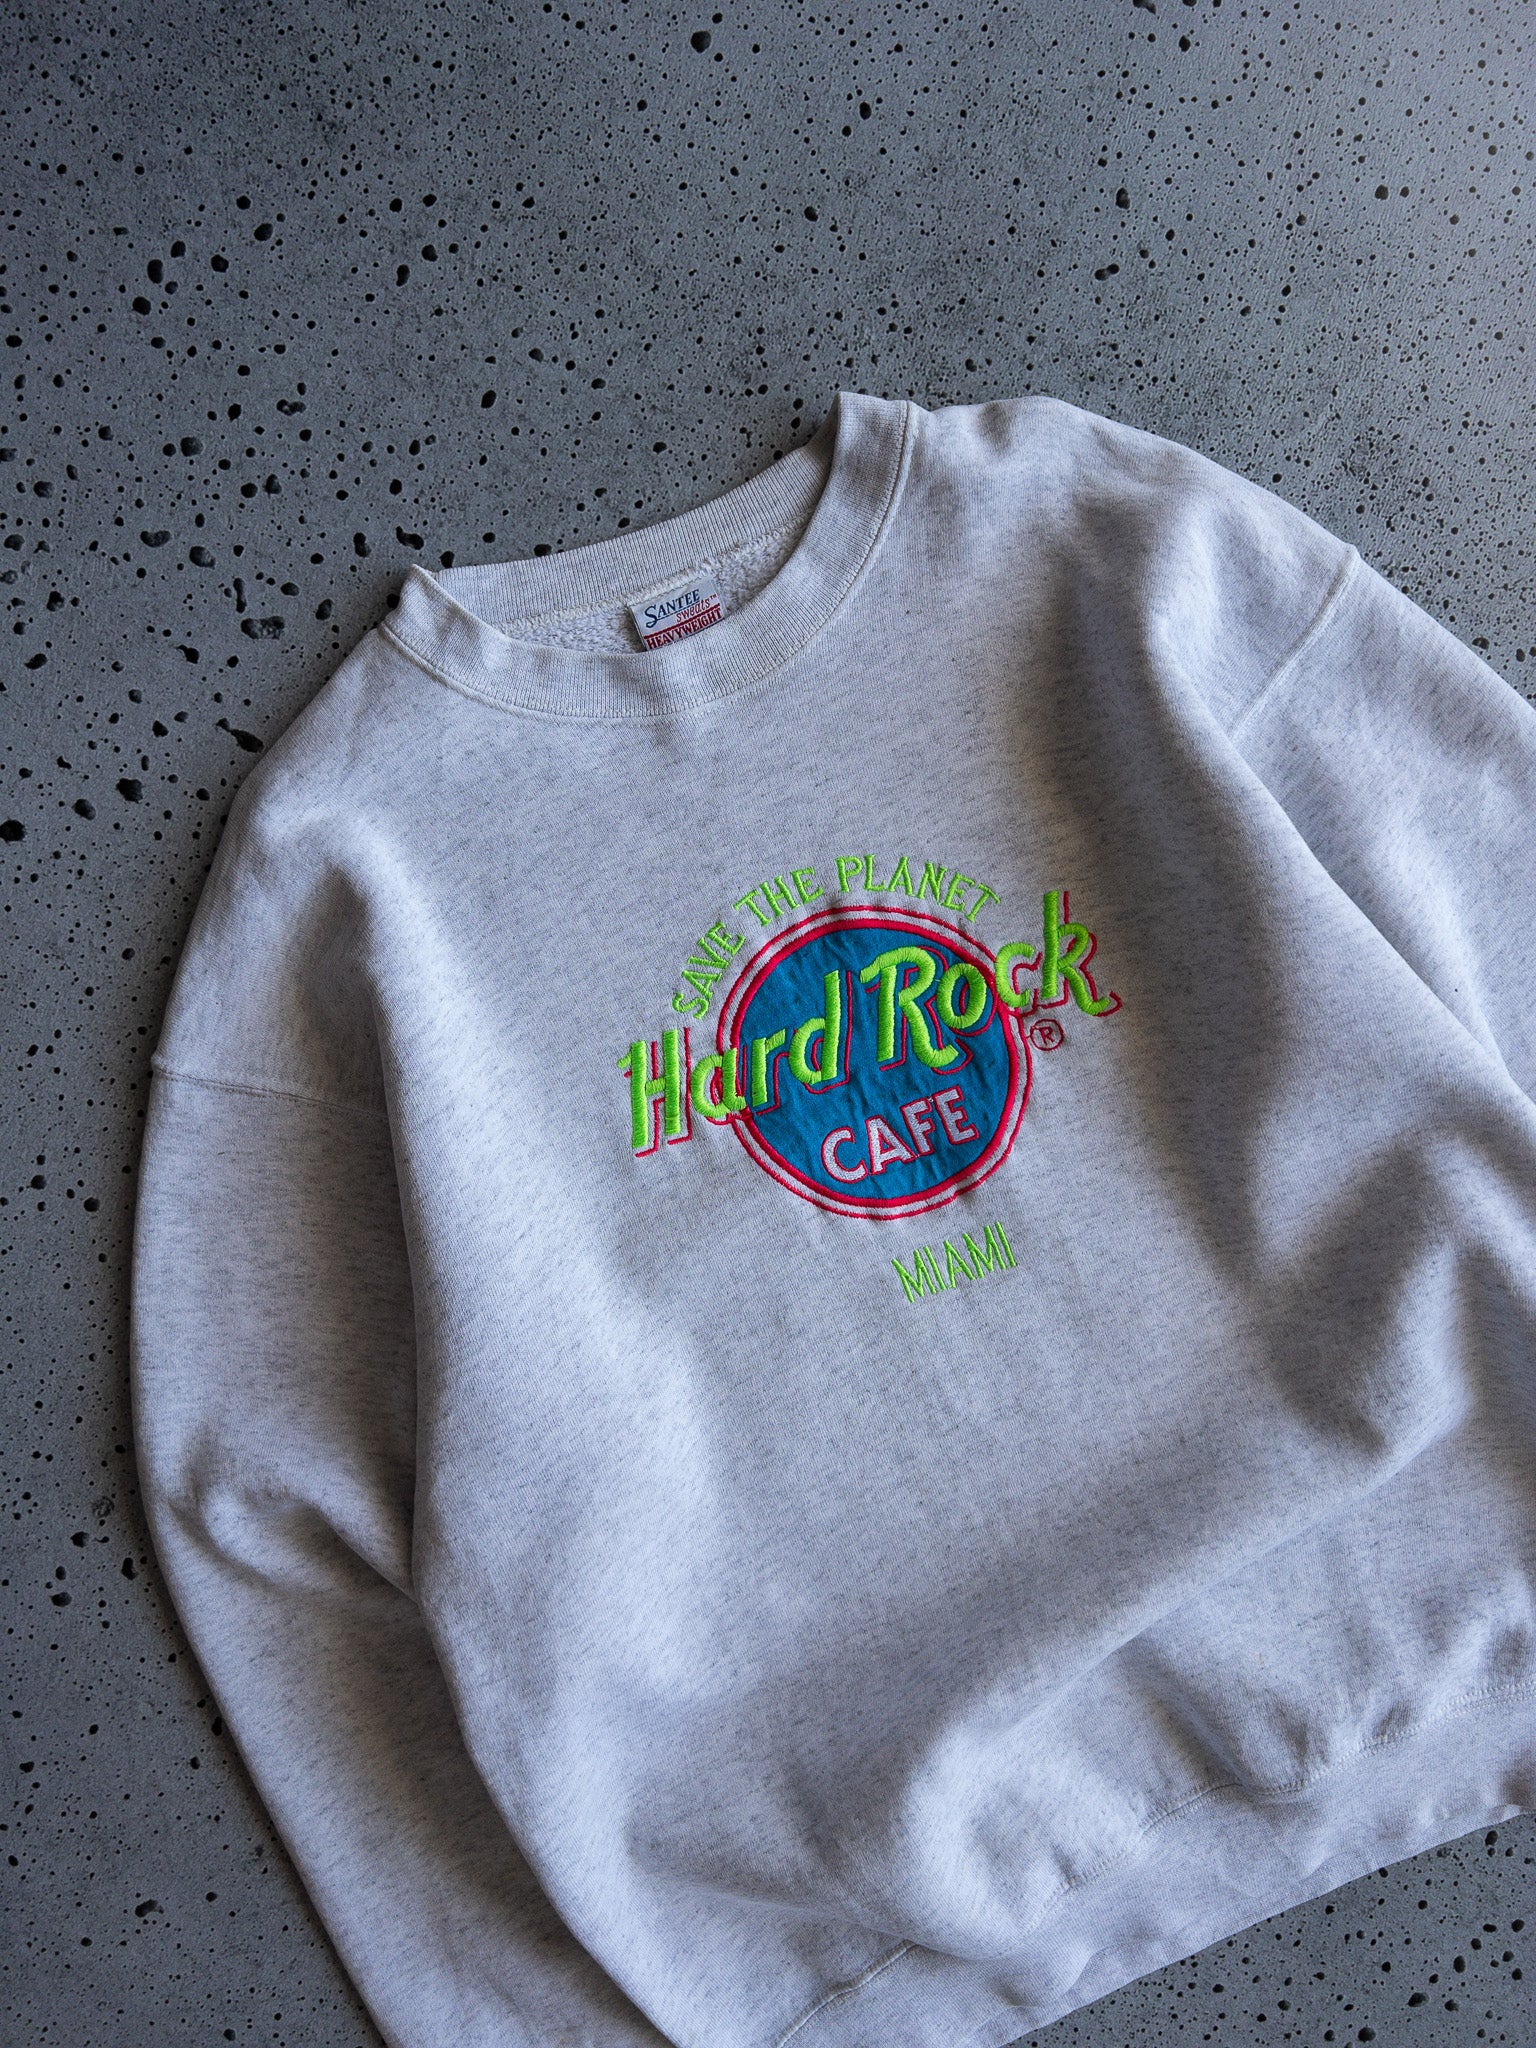 Vintage Hard Rock Cafe Miami Sweatshirt (L)